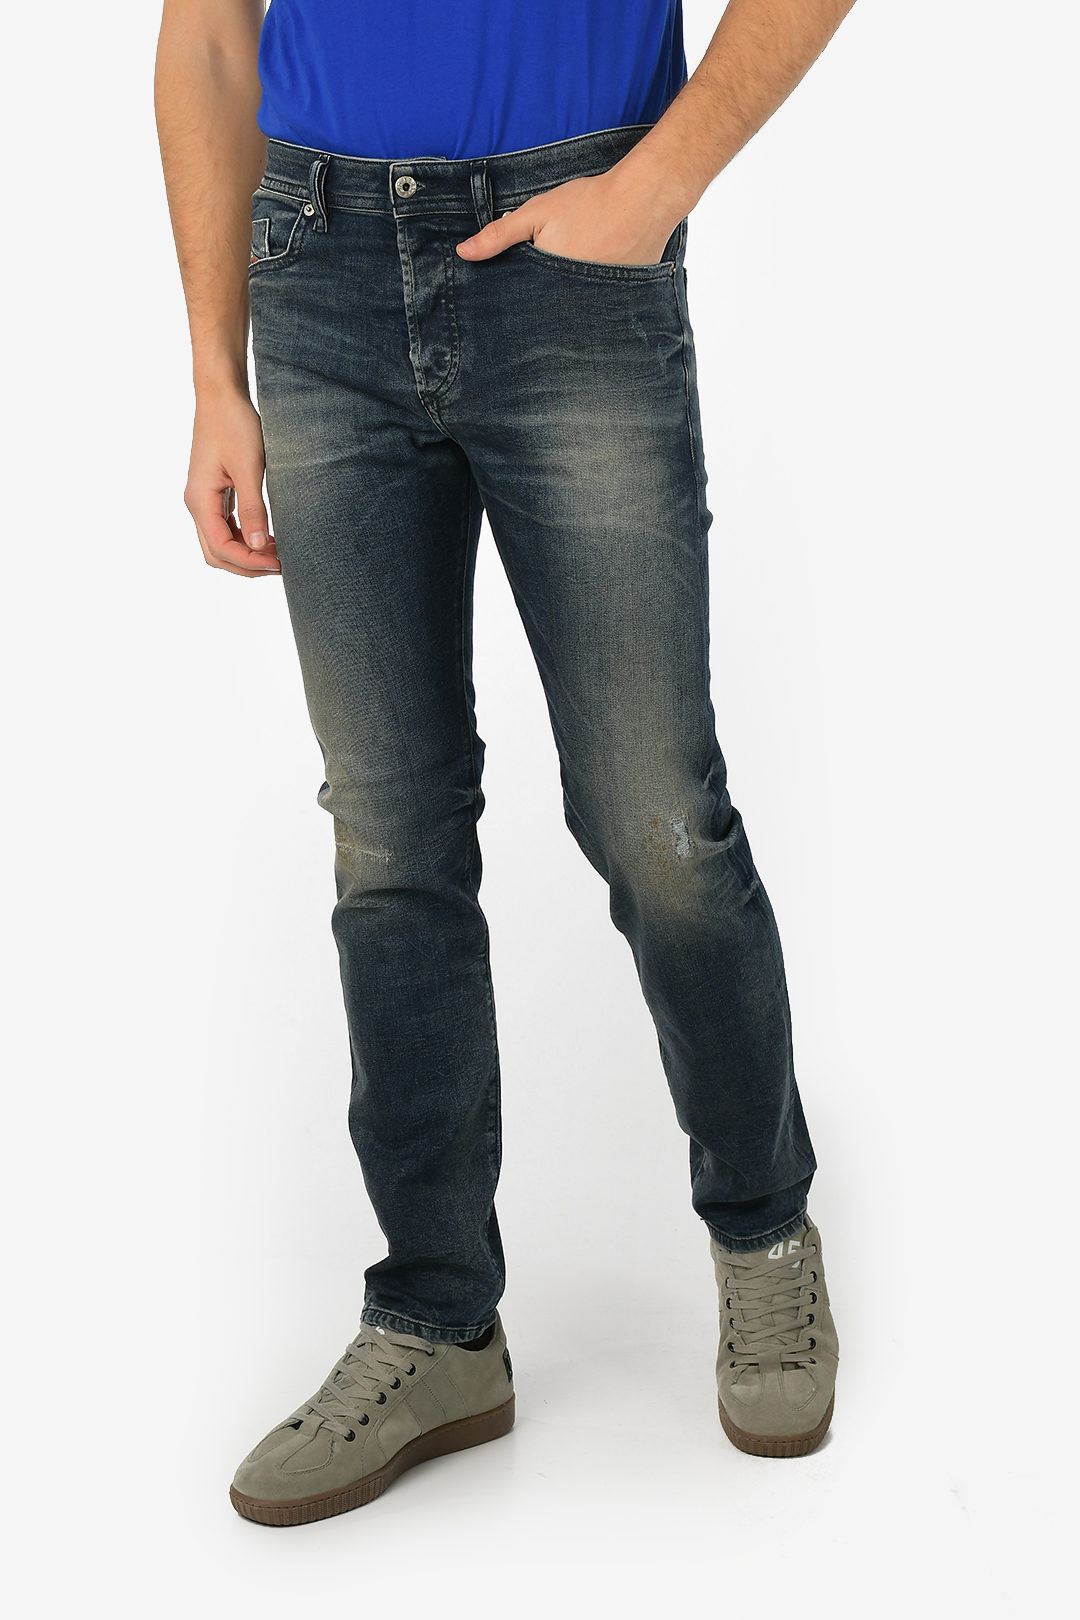 Penneven Tyggegummi I detaljer Diesel 16cm Denim Stretch BUSTER Slim Fit Jeans L32 men - Glamood Outlet